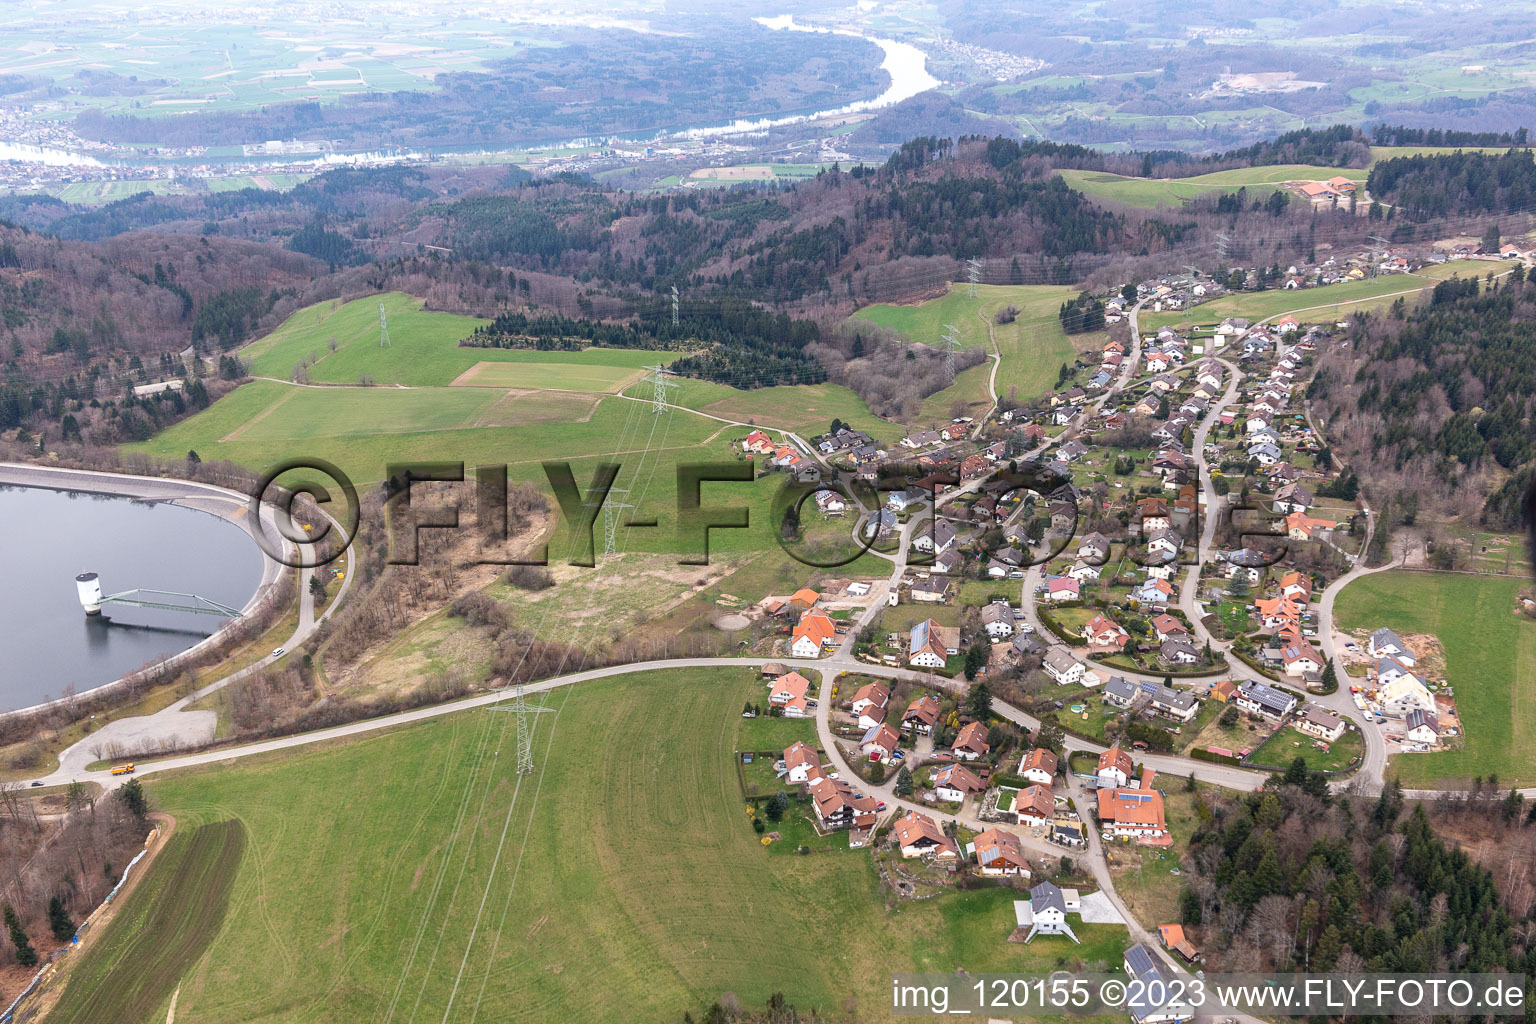 Vue aérienne de Oeuf, bassin de l'Eggberg à Rickenbach dans le département Bade-Wurtemberg, Allemagne